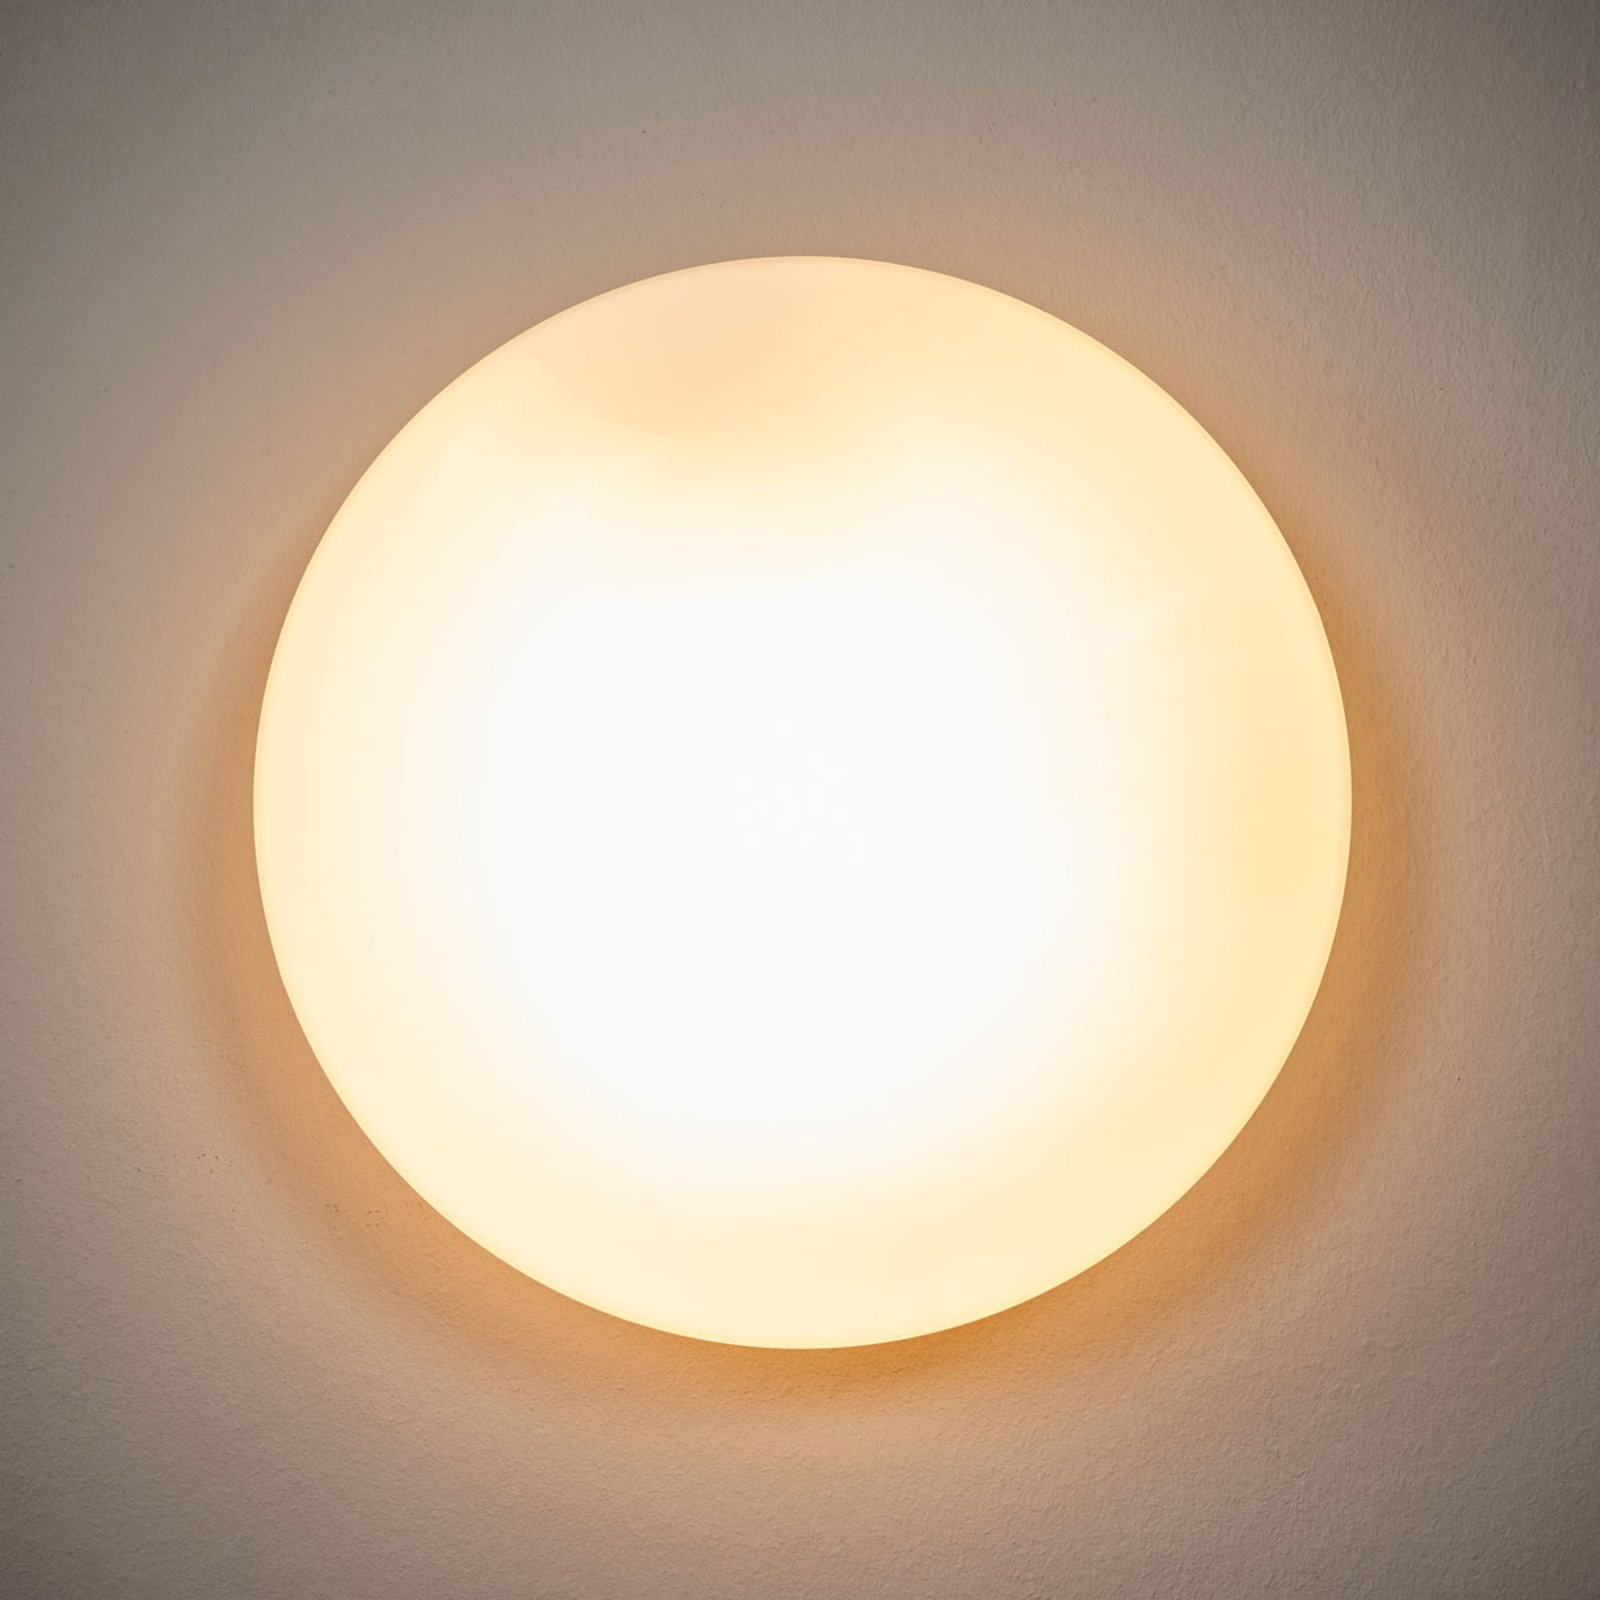 Alba ceiling light made of opal glass, Ø 25 cm